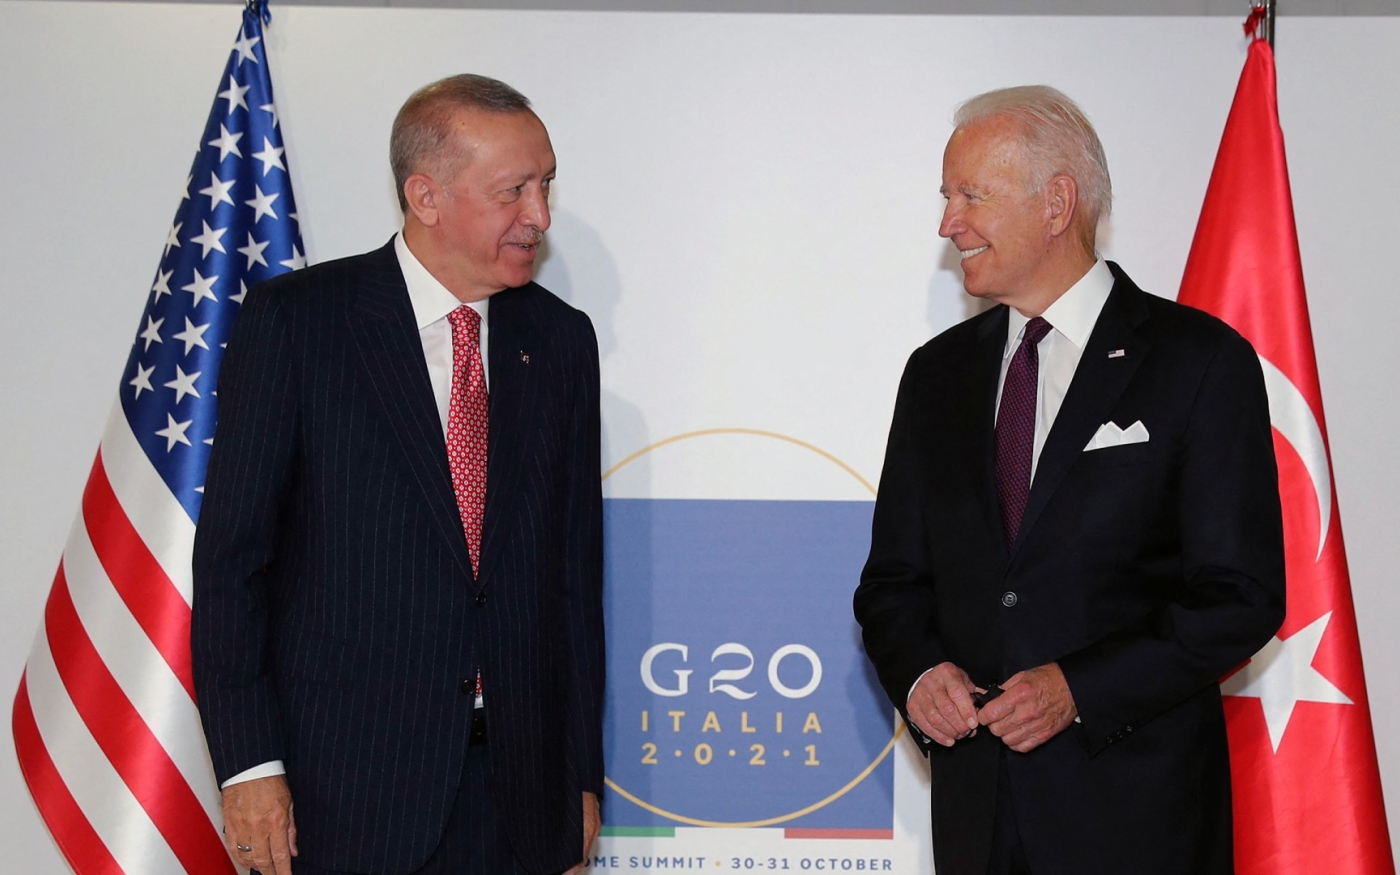 Le président américain Joe Biden avec le président turc Recep Tayyip Erdoğan lors du sommet du G20, au palais des congrès de Rome La Nuvola, le 31 octobre 2021 (AFP)